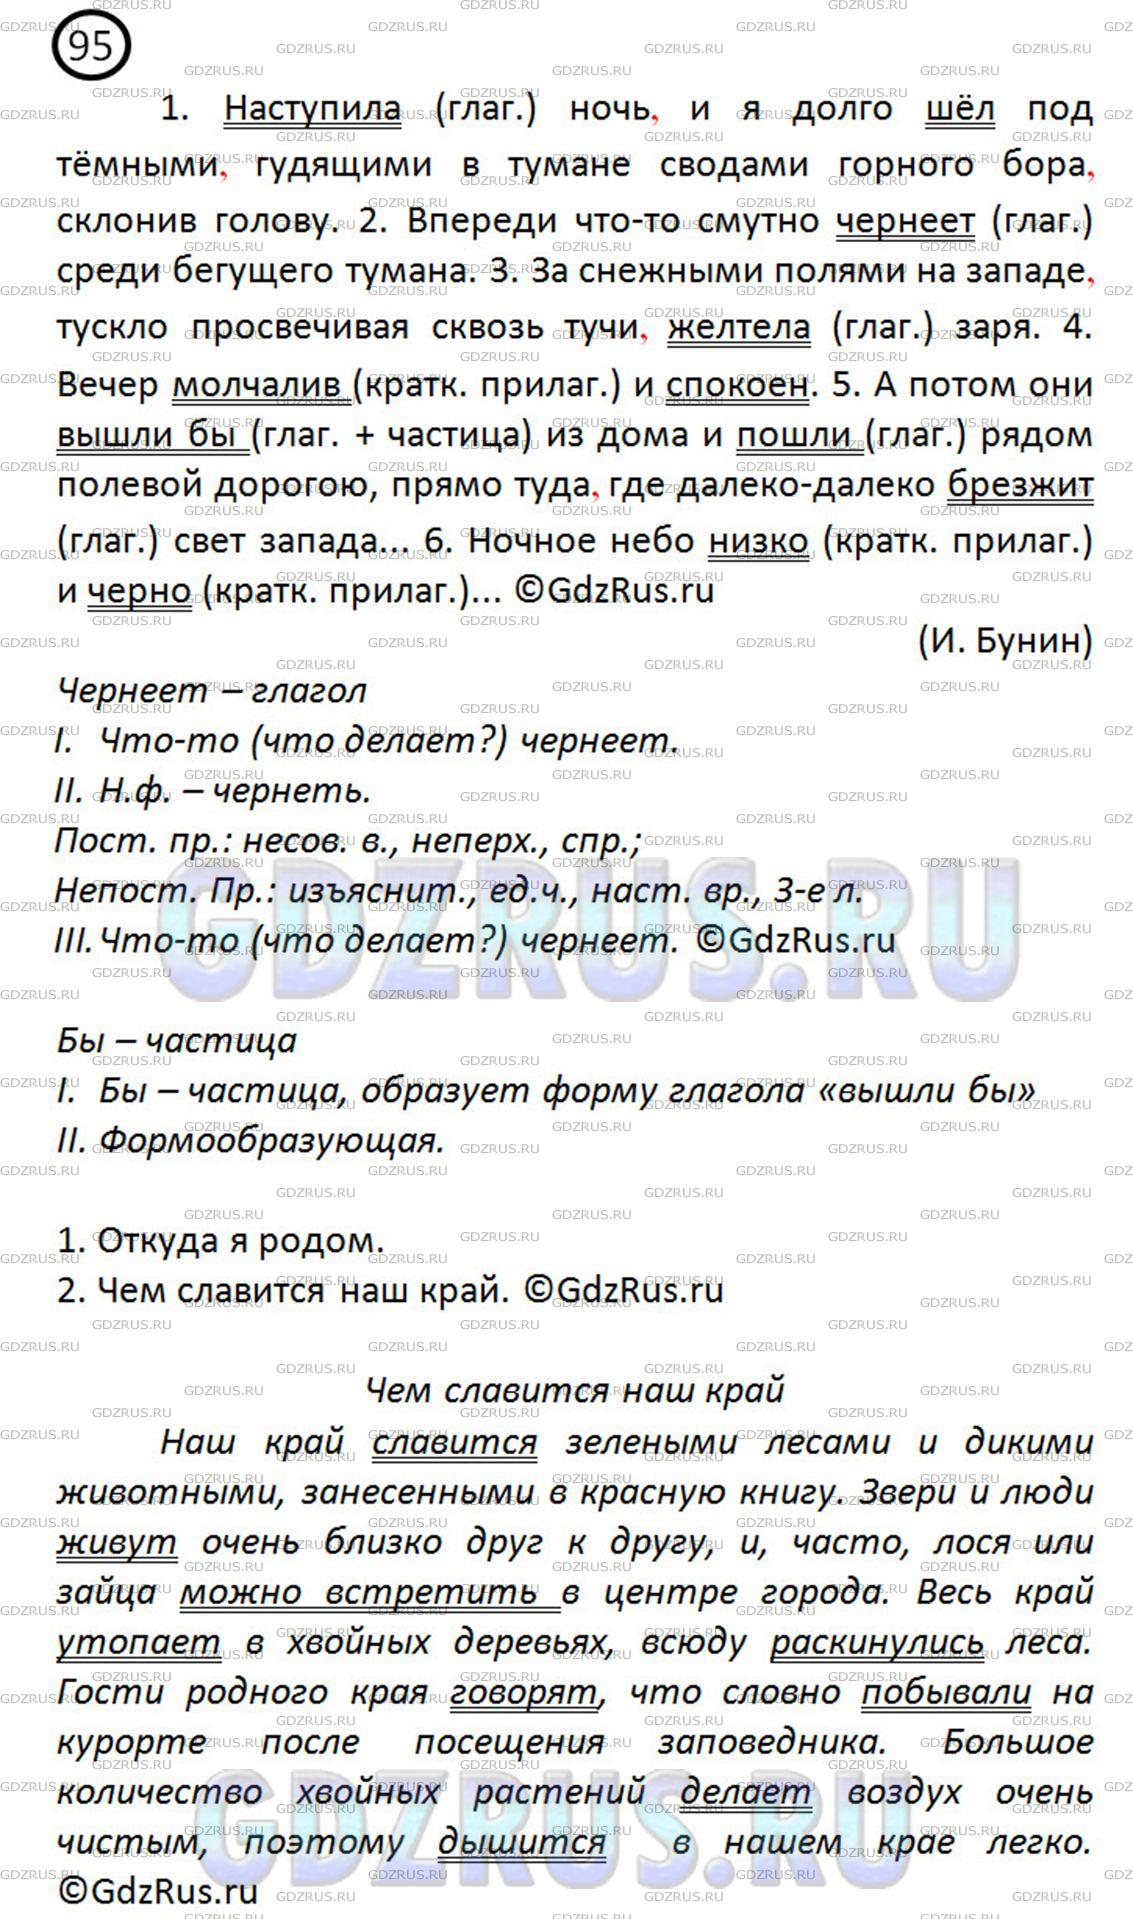 Фото решения 3: ГДЗ по Русскому языку 8 класса: Ладыженская Упр. 95